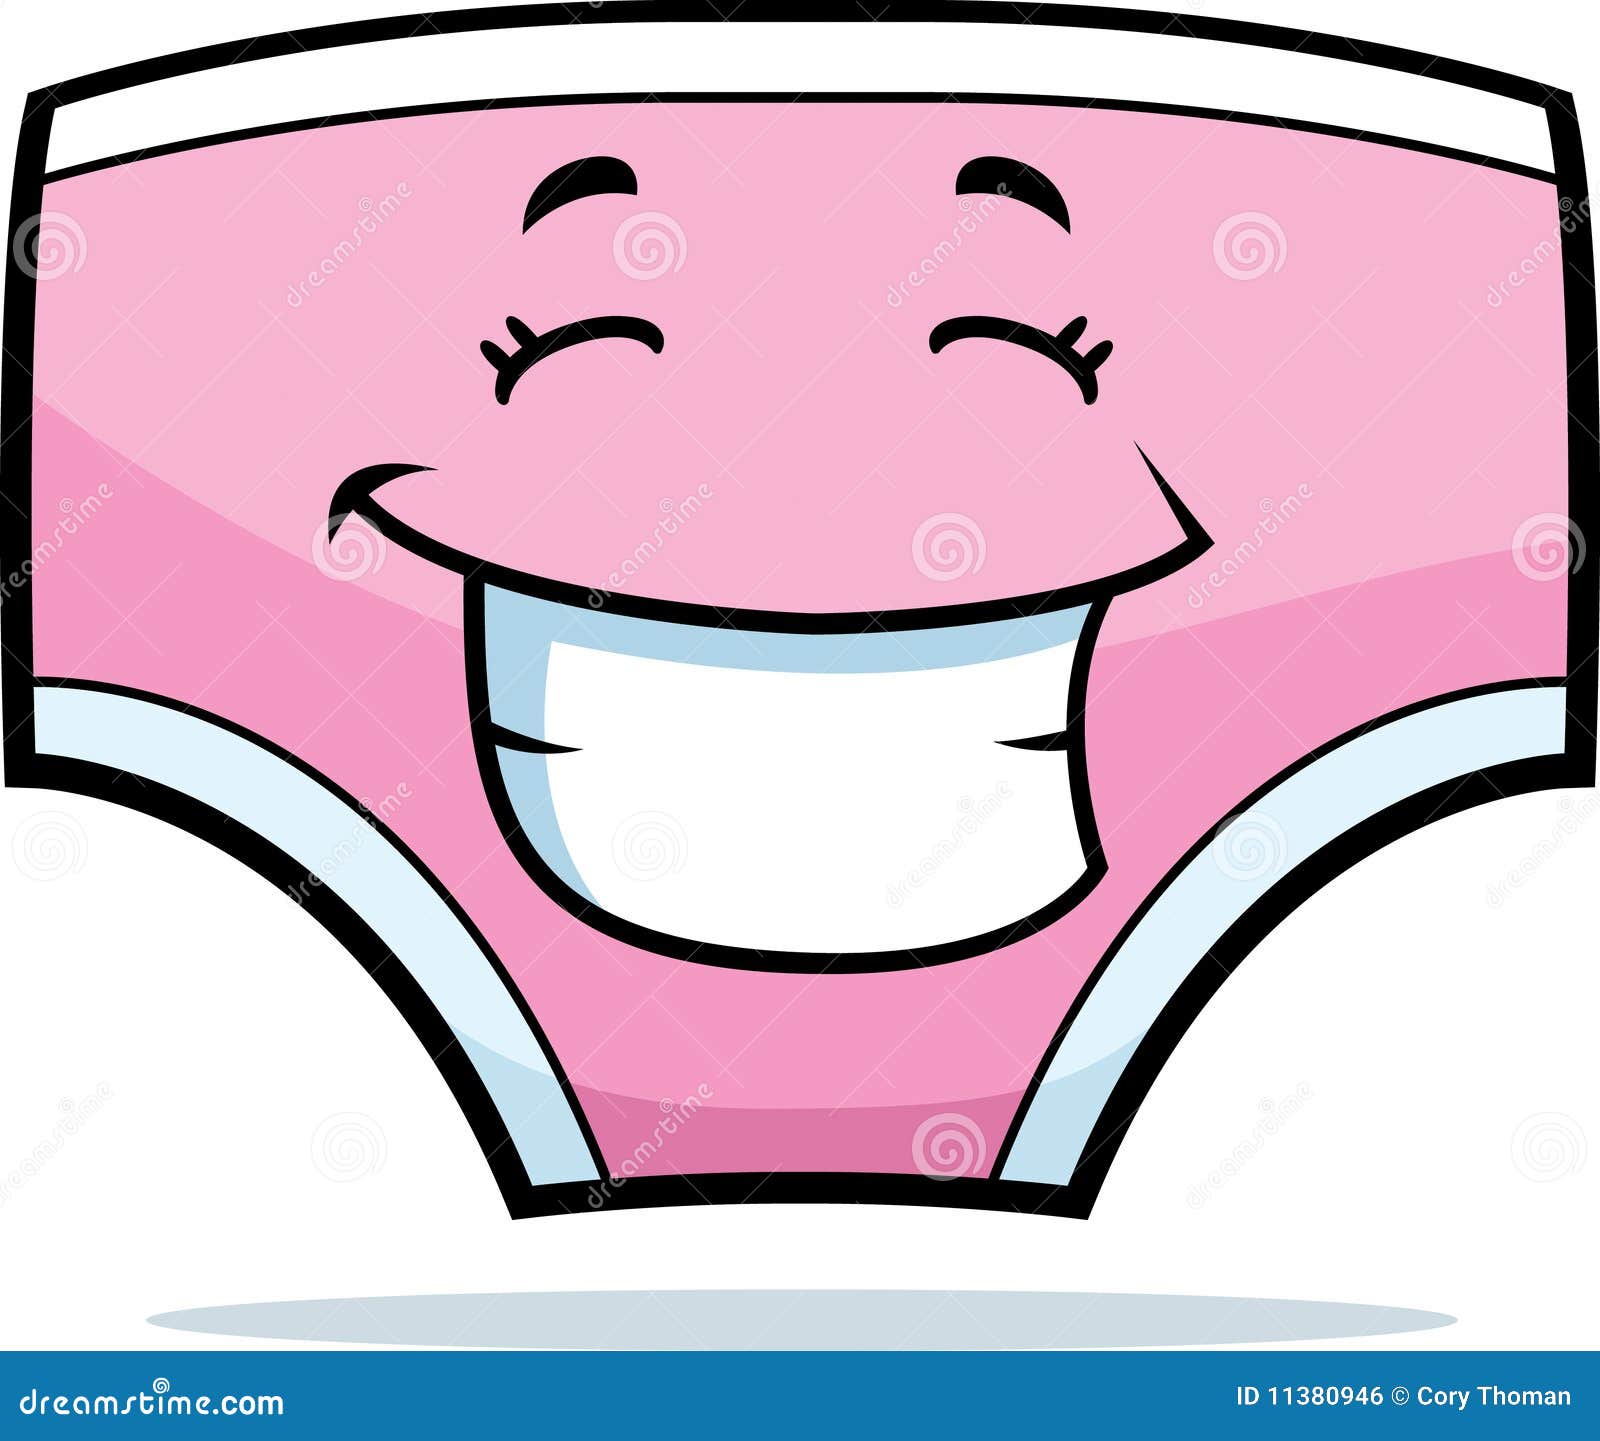 cartoon underwear clipart - photo #2